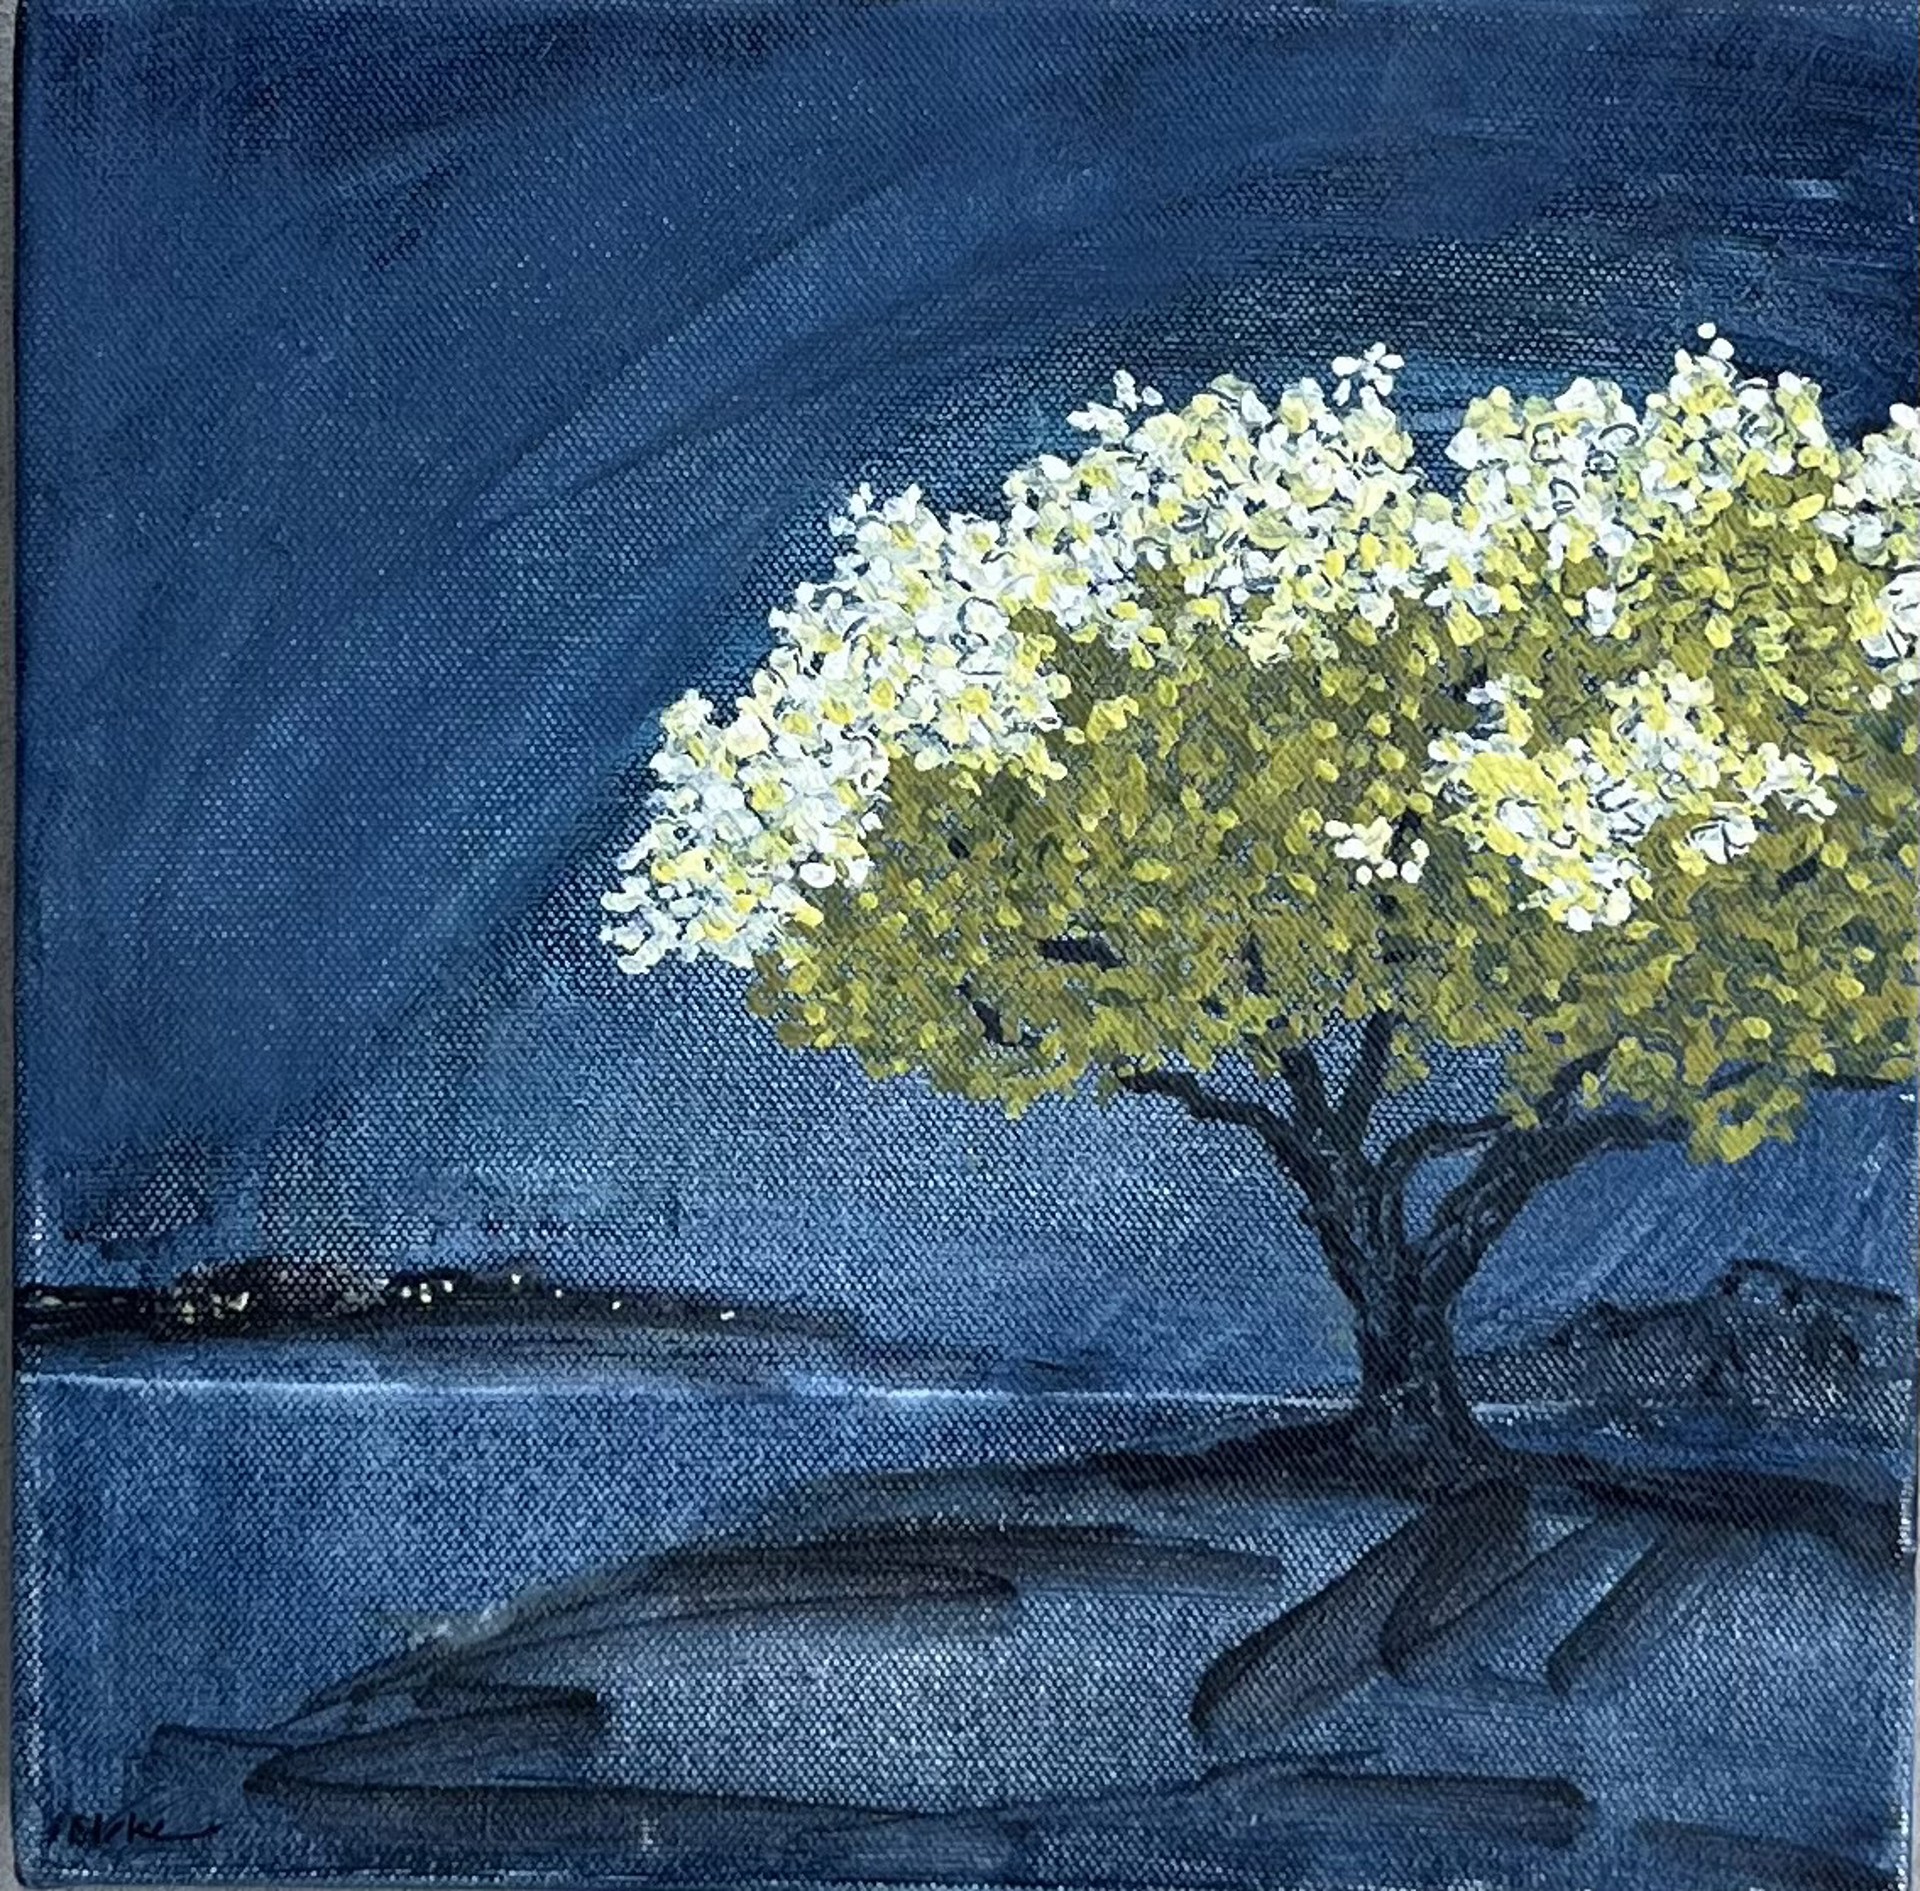 Tree at Night by Julia Blake